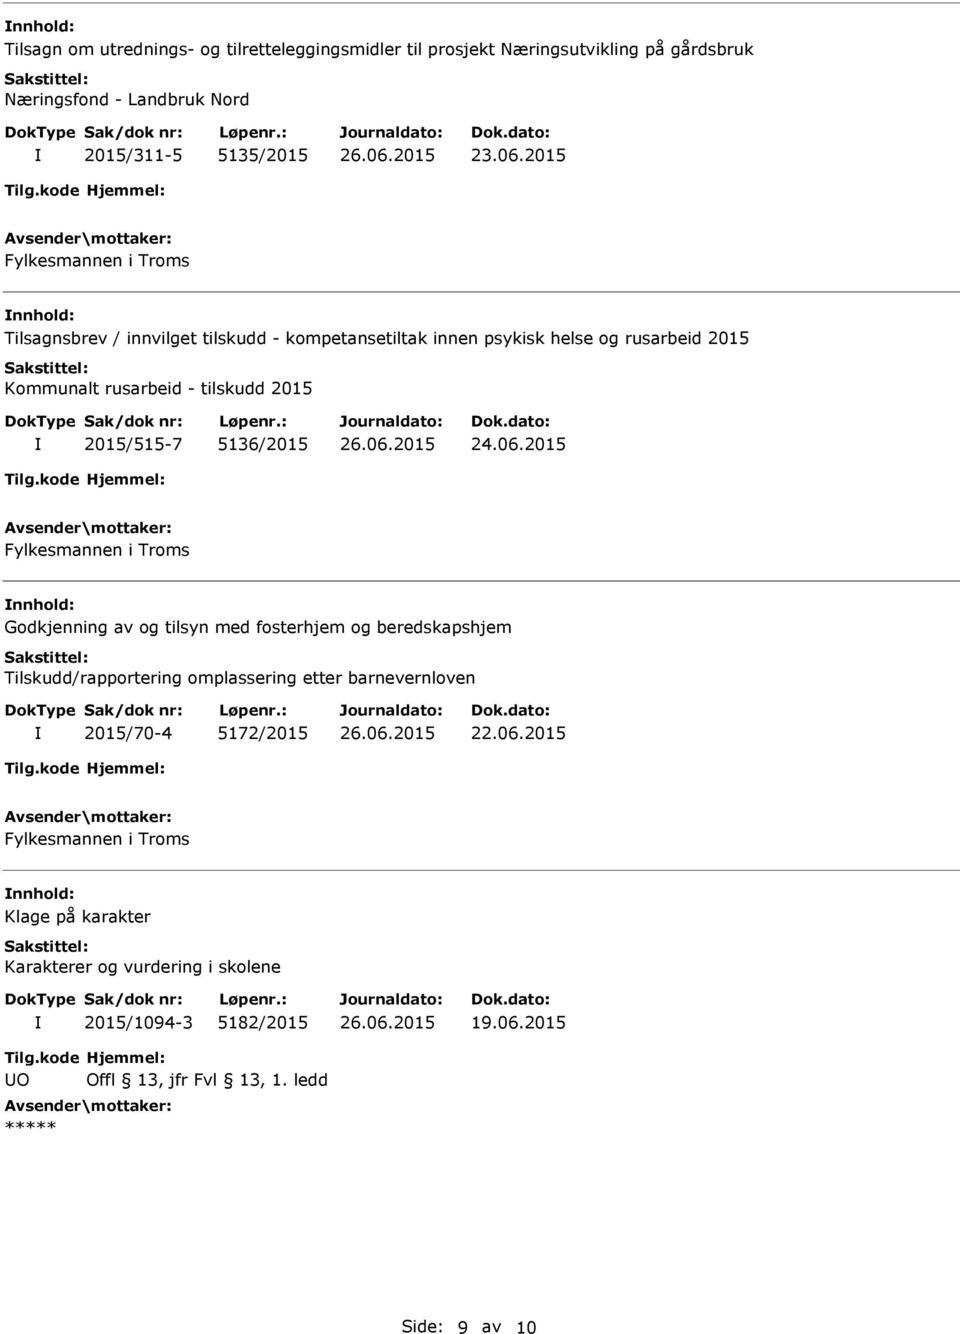 2015/515-7 5136/2015 Fylkesmannen i Troms Godkjenning av og tilsyn med fosterhjem og beredskapshjem Tilskudd/rapportering omplassering etter